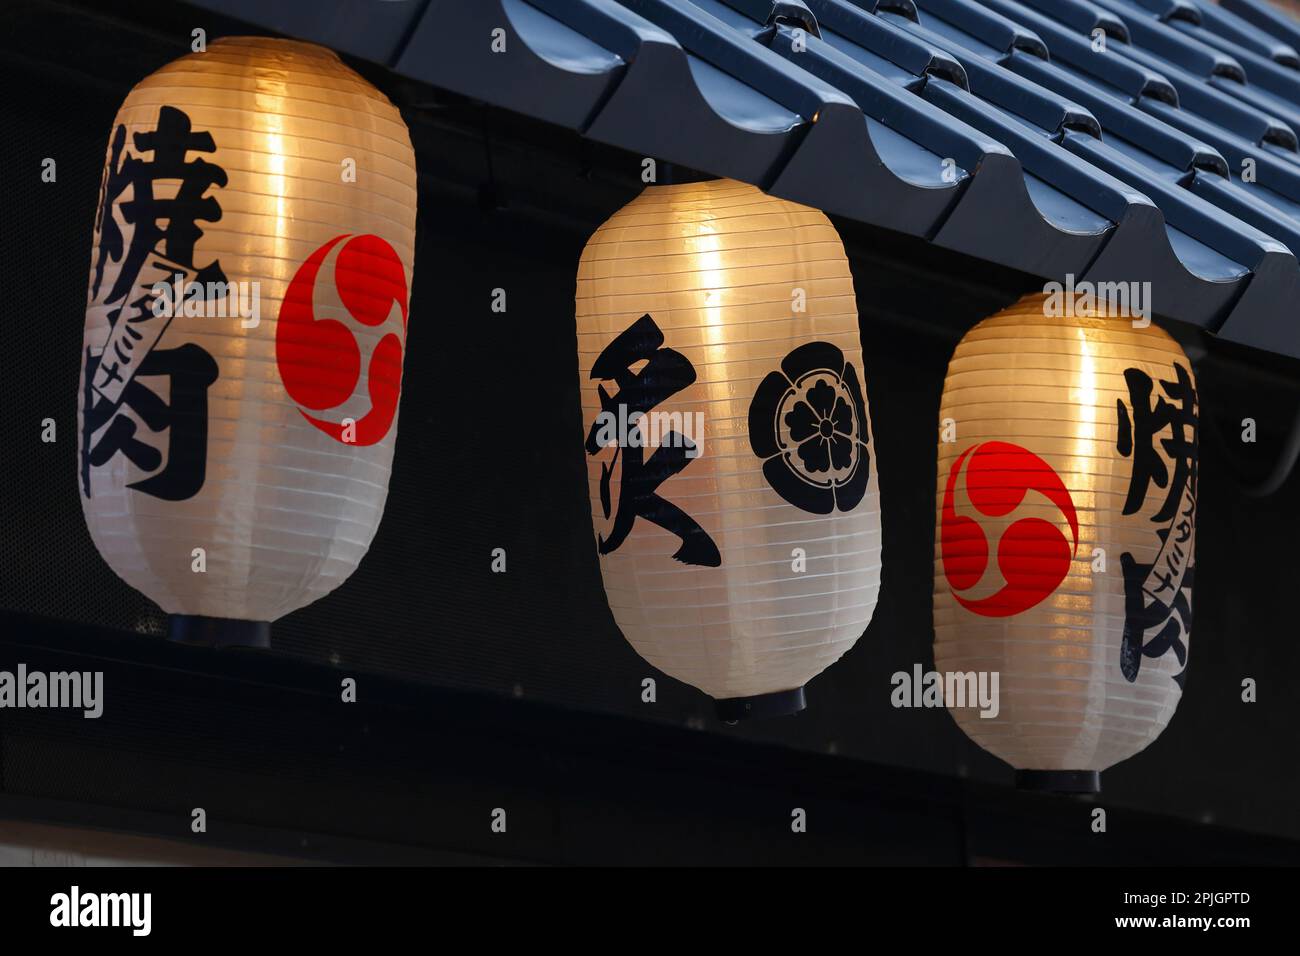 Japanische Papierlaternen, Chochin 提灯, die vor einem Restaurant hängen. Auf den Laternen steht 焼肉 Yakiniku oder "gegrilltes Fleisch". Stockfoto